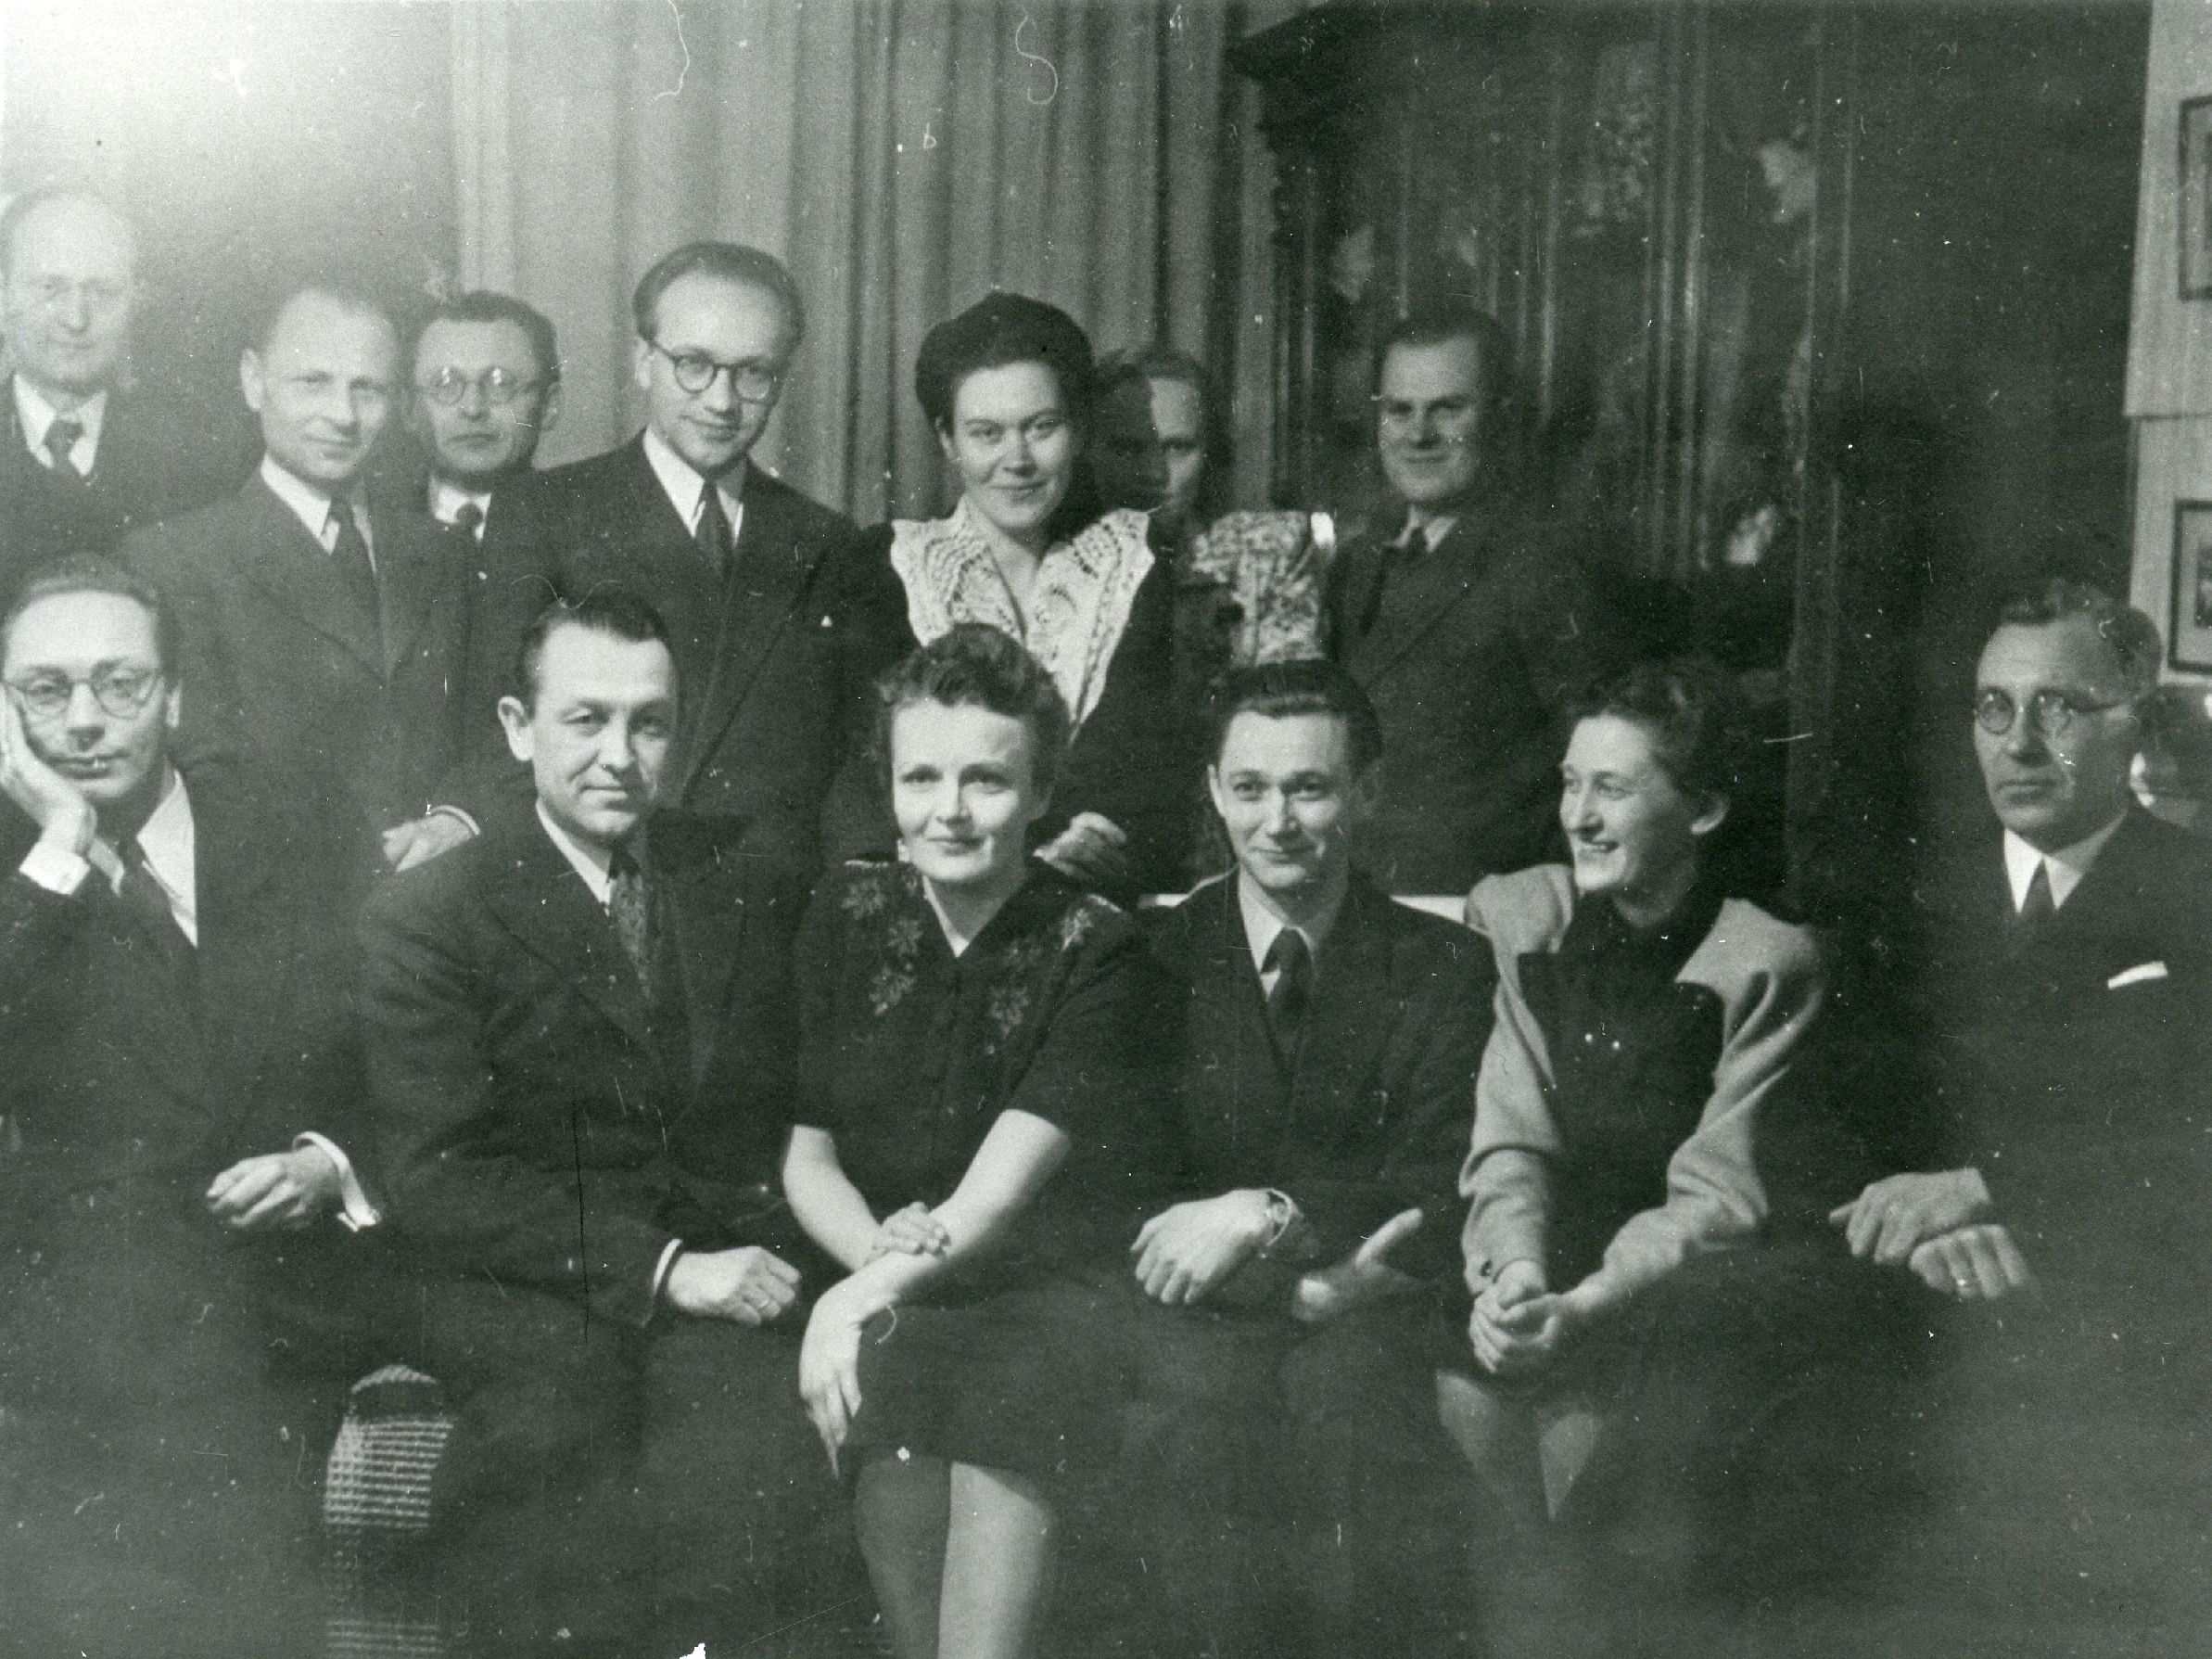 Members of "Veljesto" in the 1940s